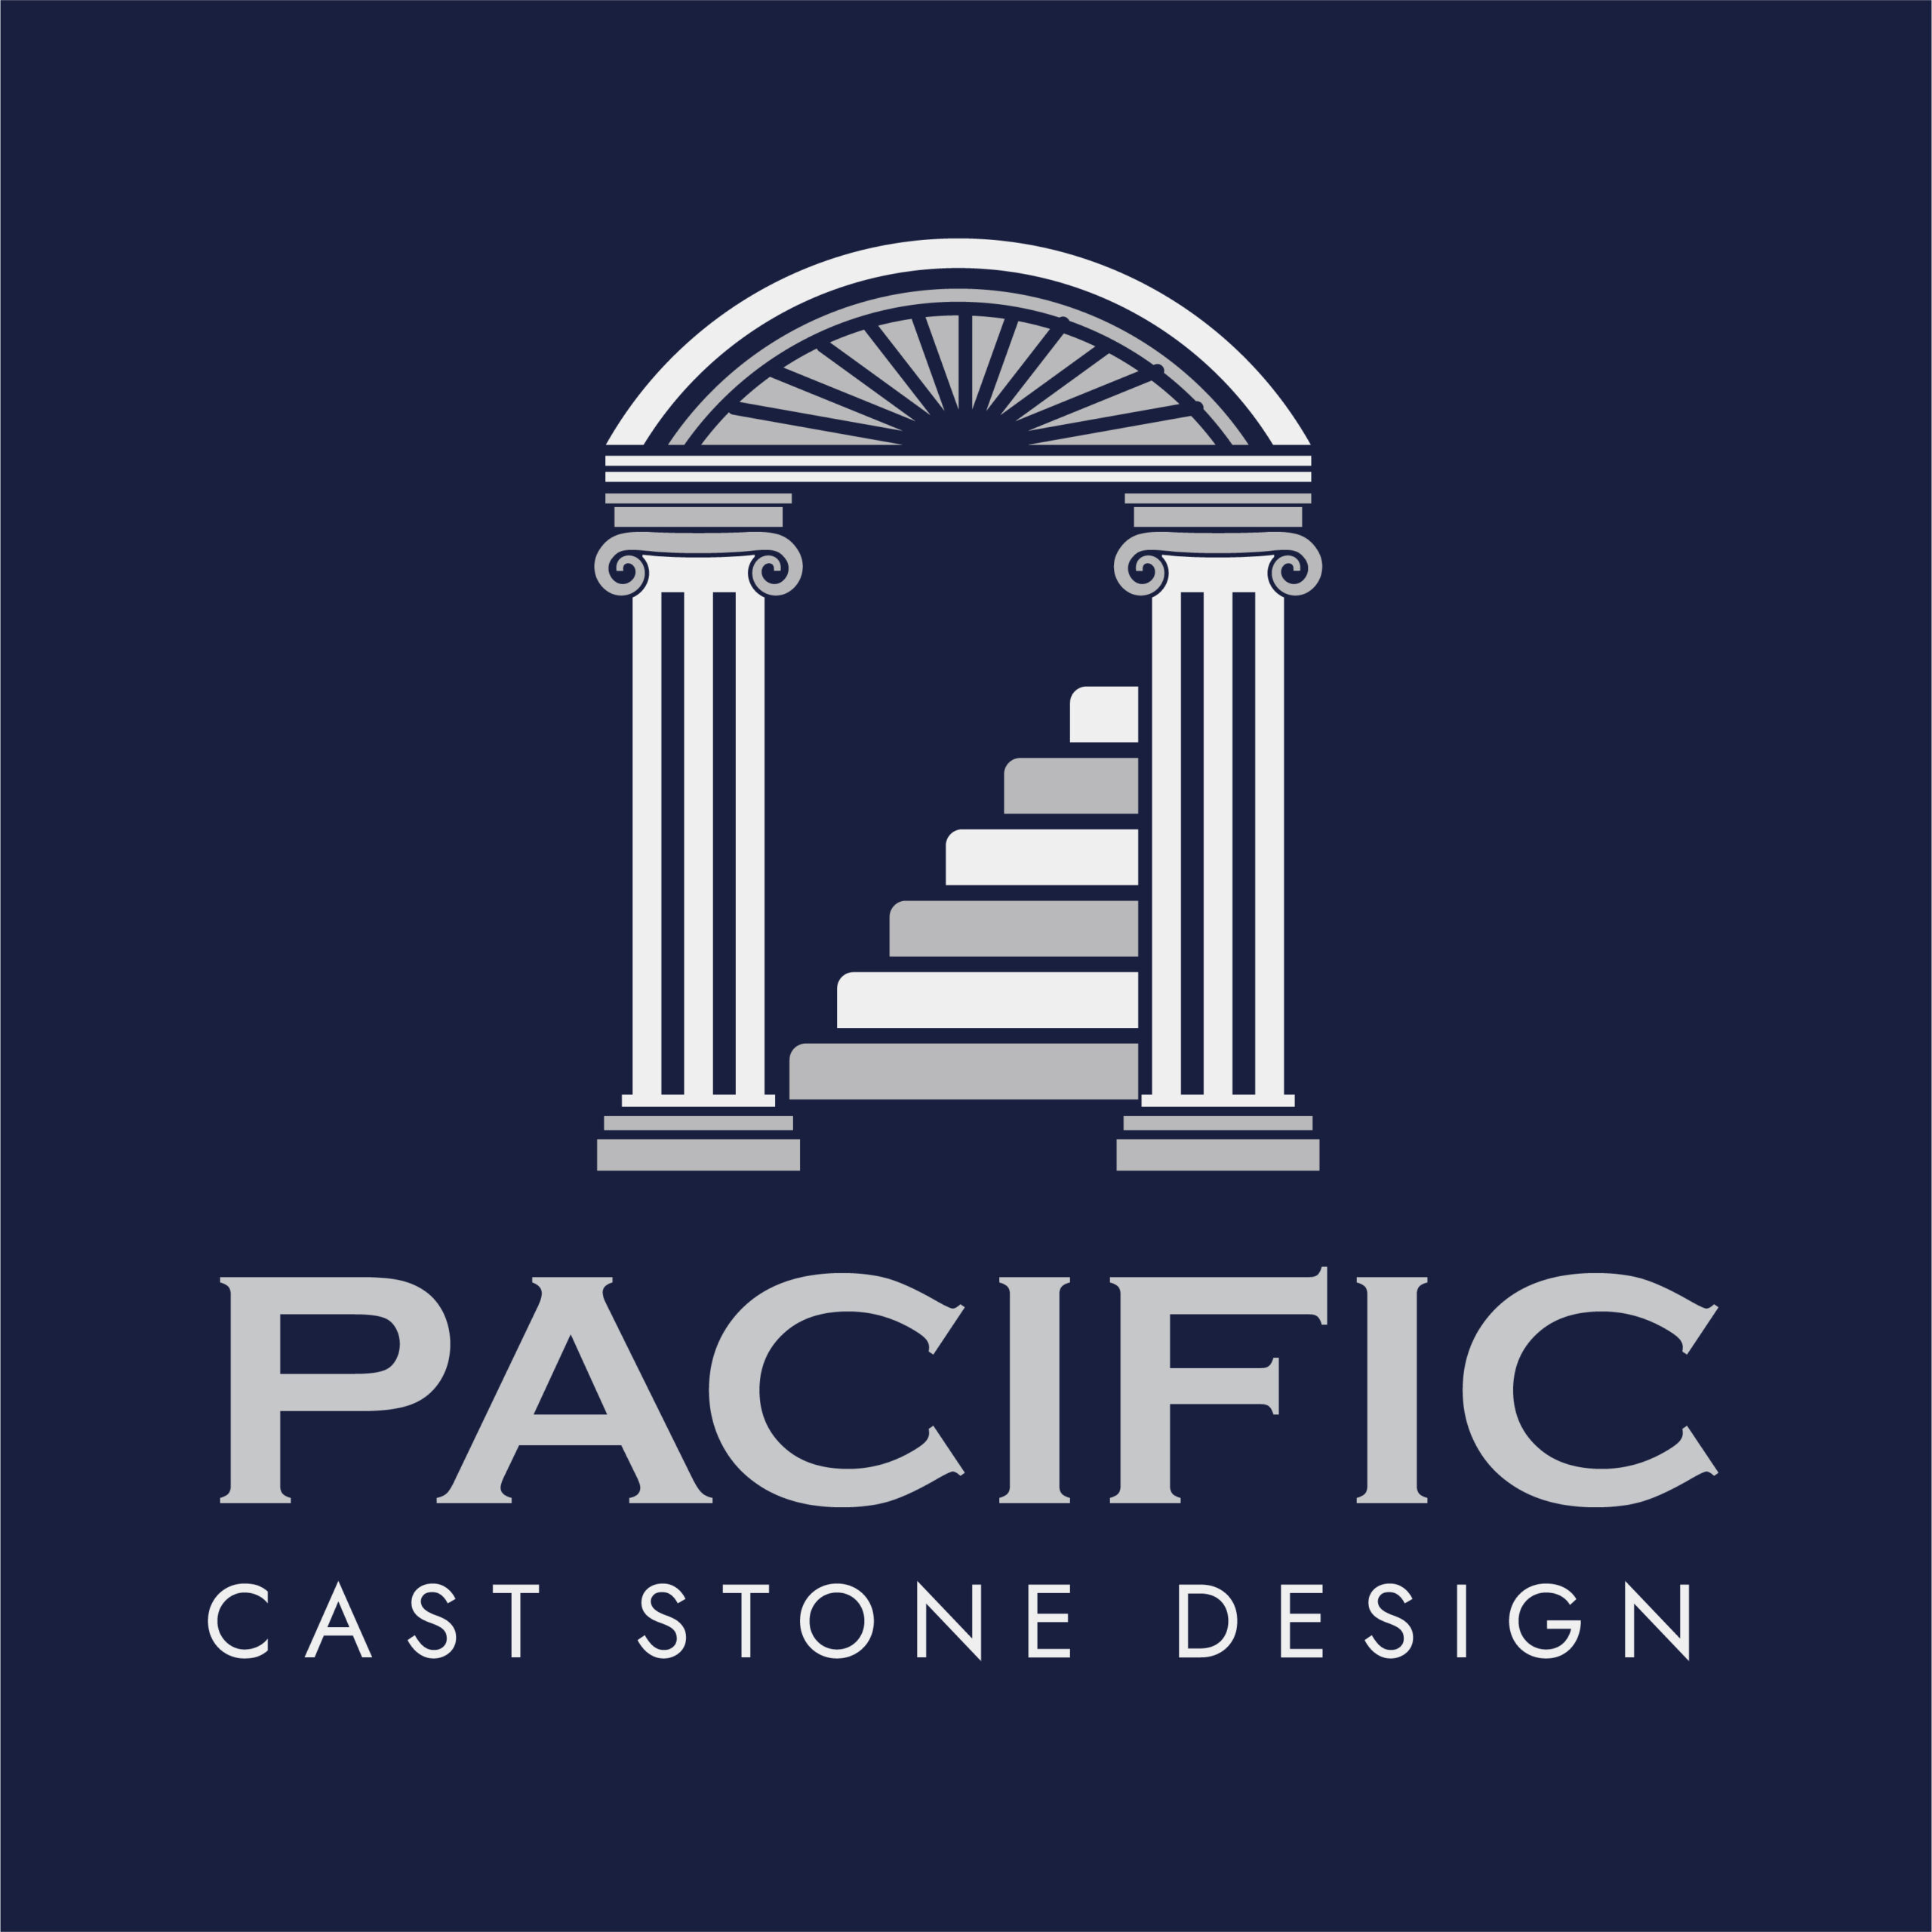 Pacific Cast Stone Design